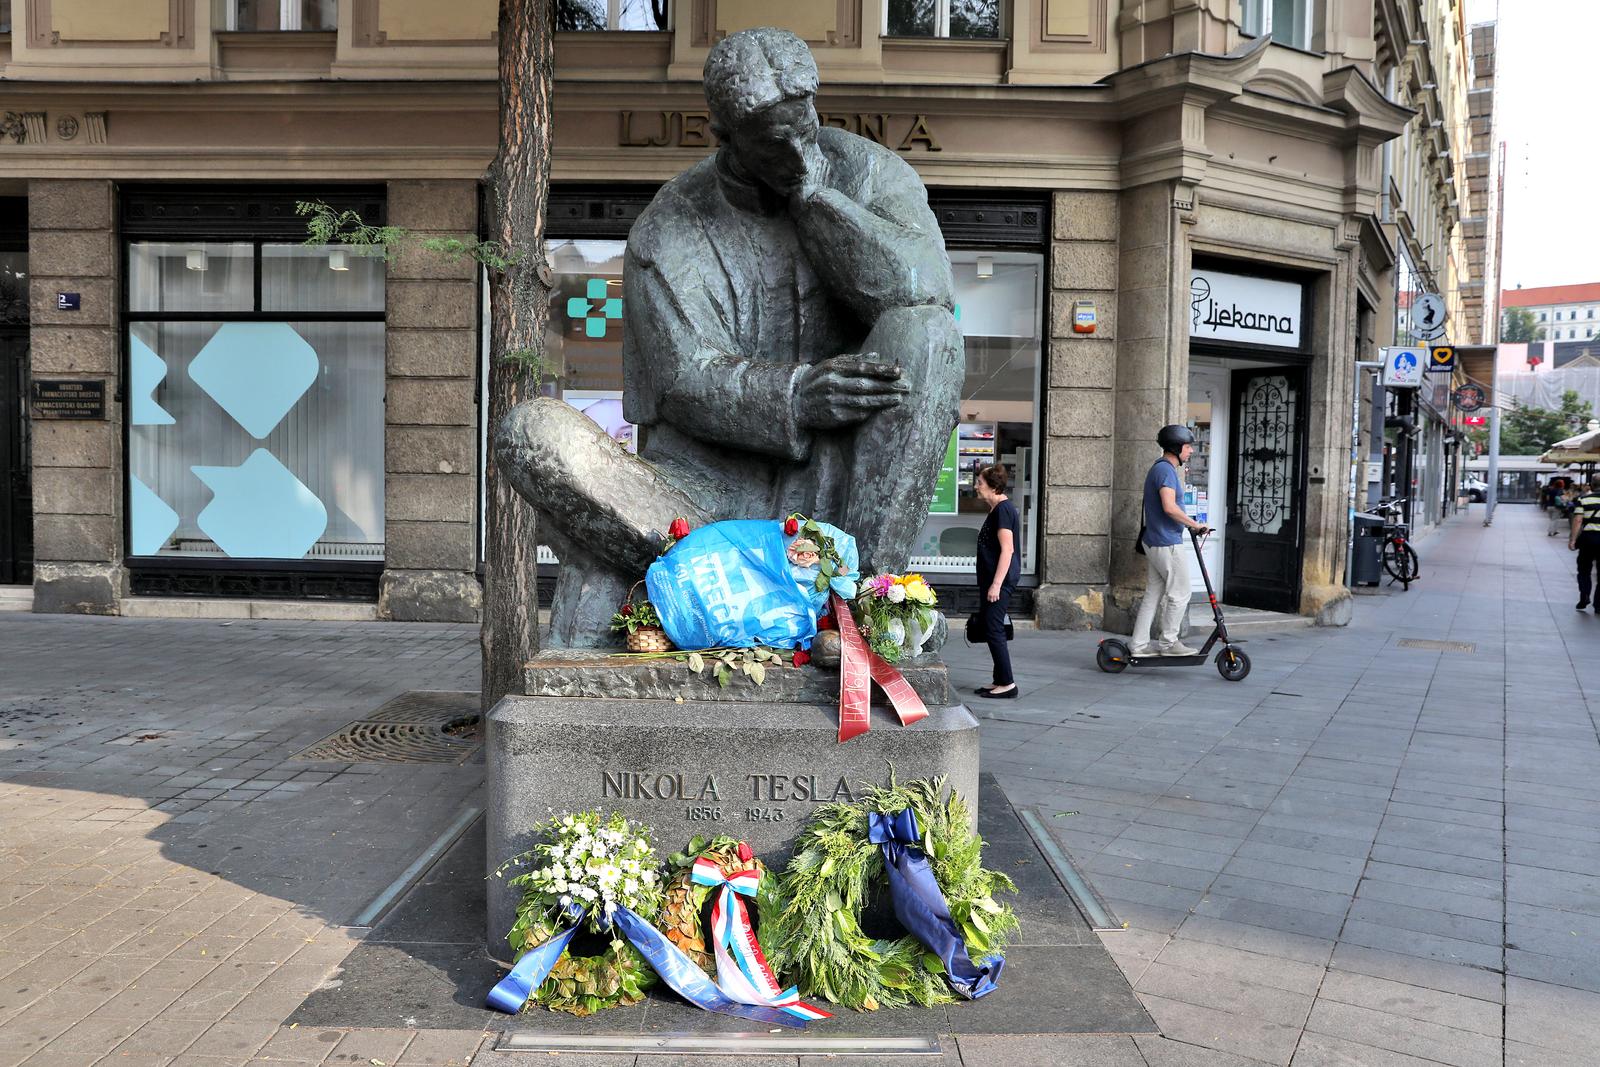 Nepoznata osoba ostavila je plavu vrećicu punu smeća na kip Nikole Tesle u Masarykovoj ulici u Zagrebu